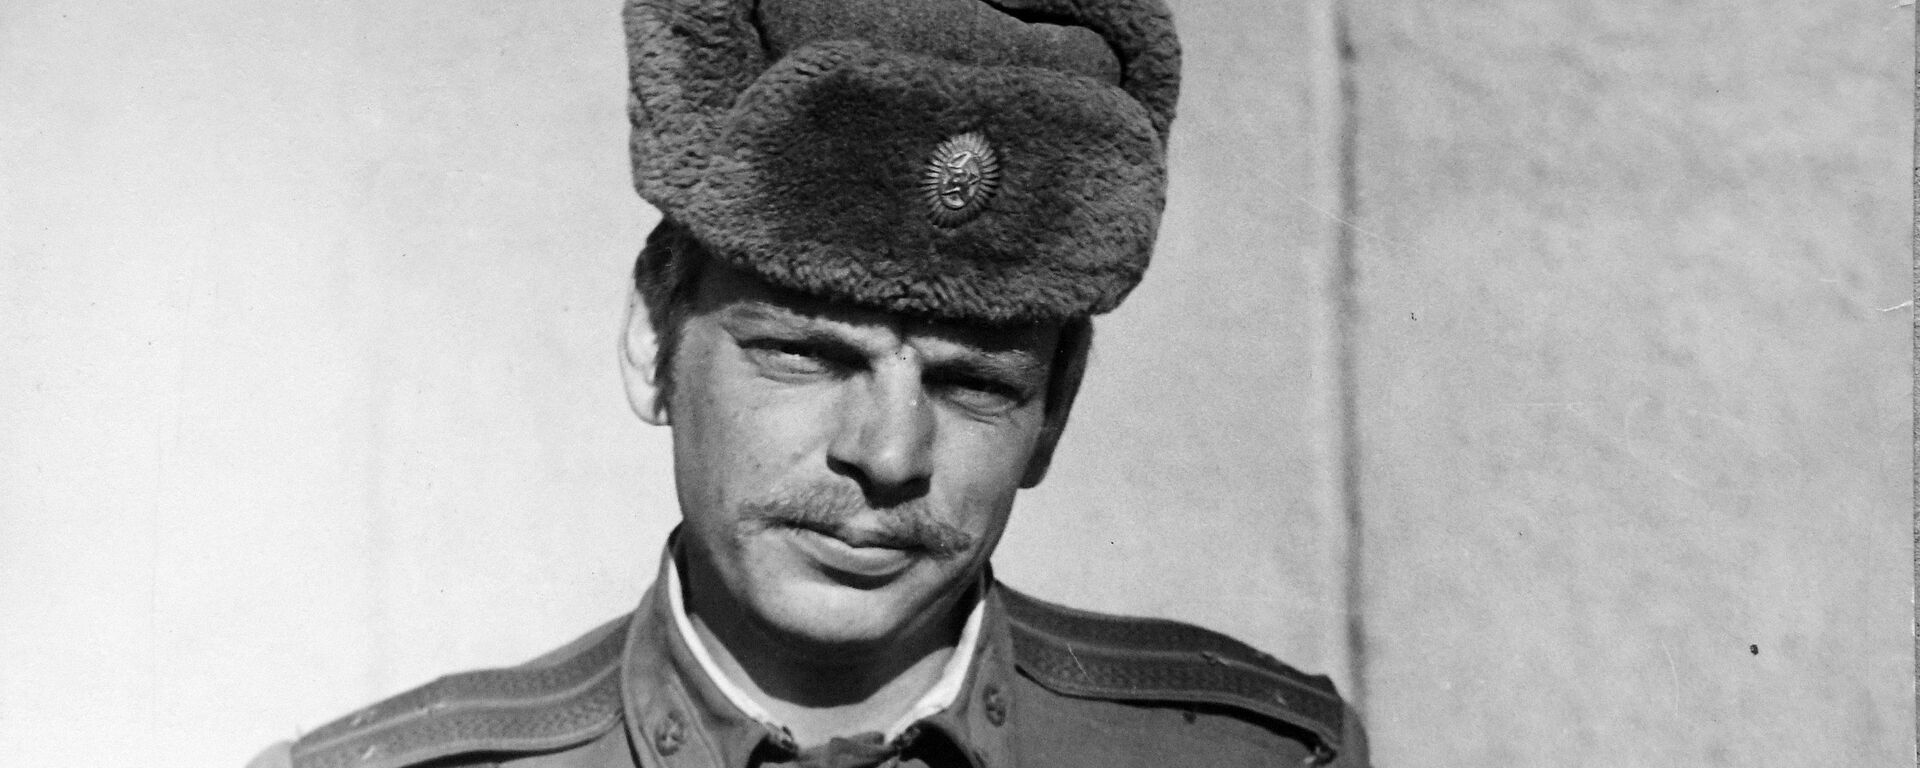 Сергей Зинченко во время командировки в Афганистан - Sputnik Беларусь, 1920, 27.01.2021